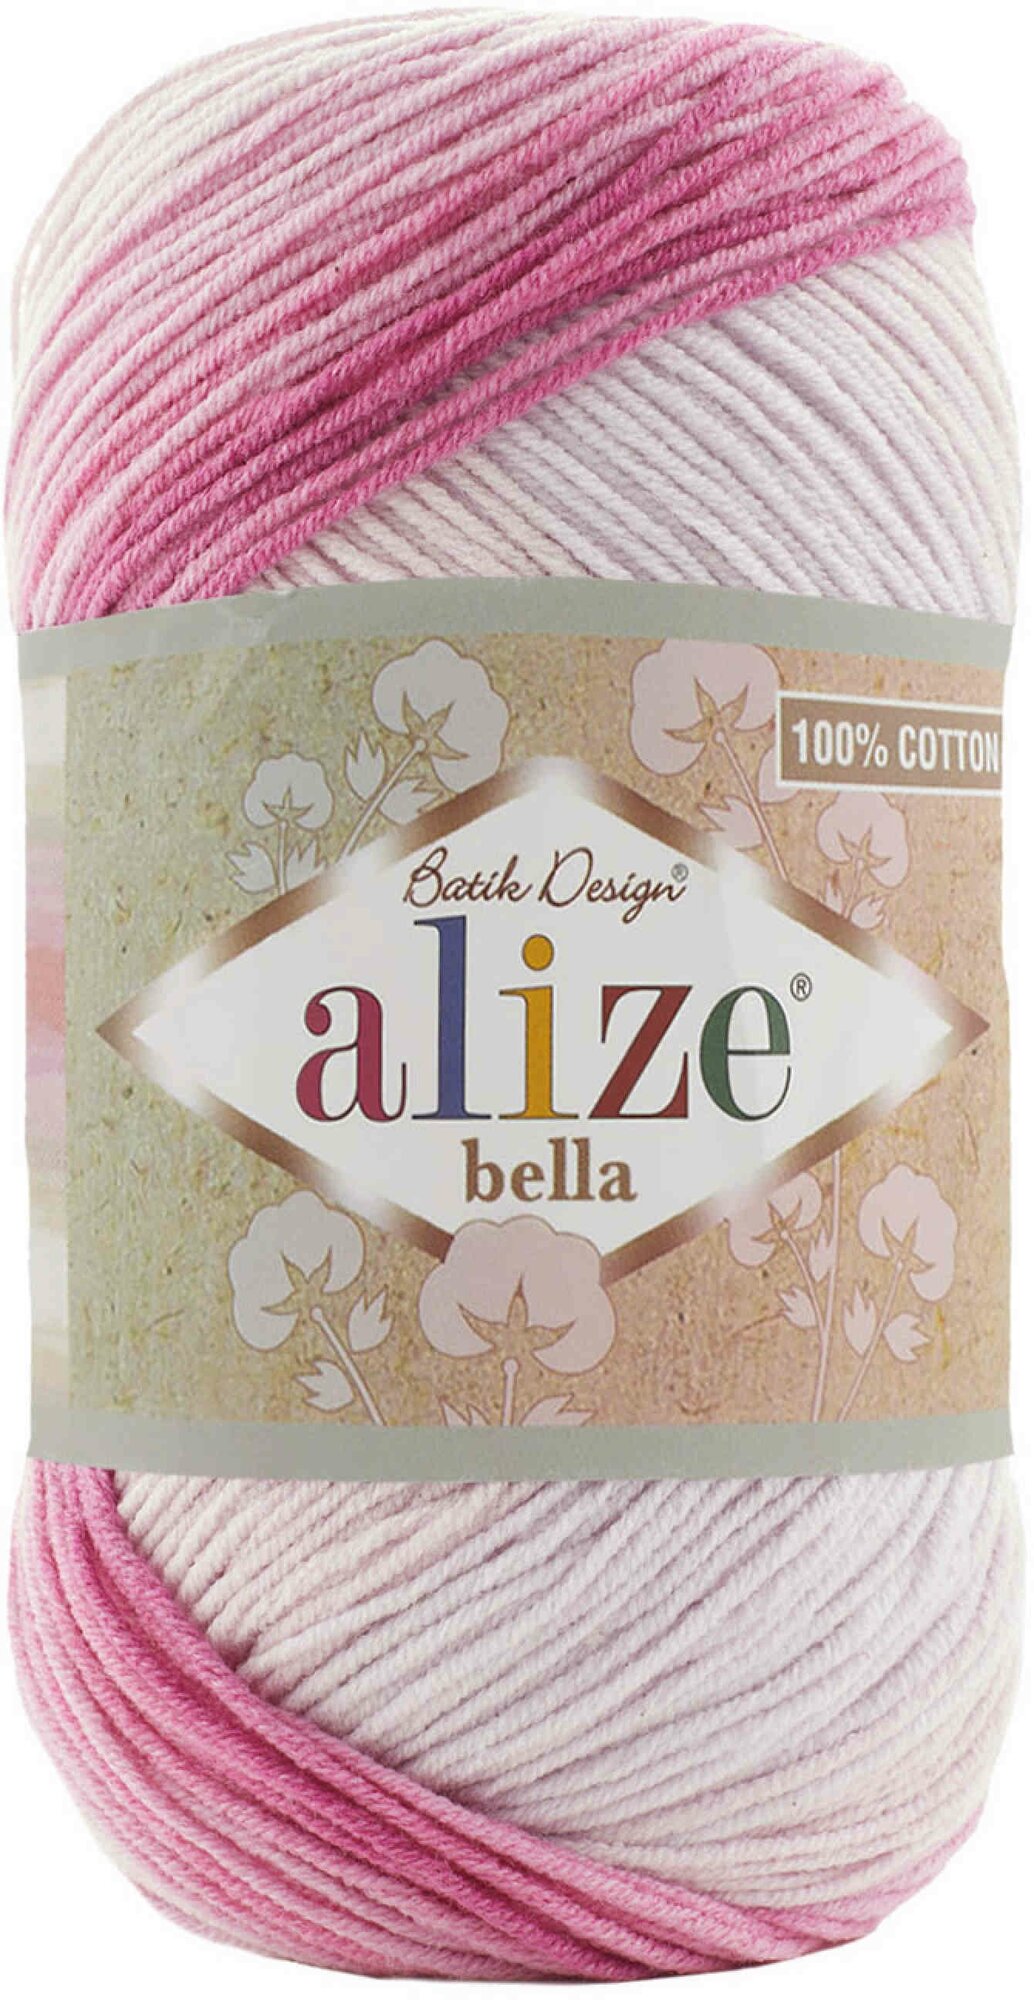 Пряжа Alize Bella Batik 100 белый-розовый-сиреневый (3302), 100%хлопок, 360м, 100г, 1шт